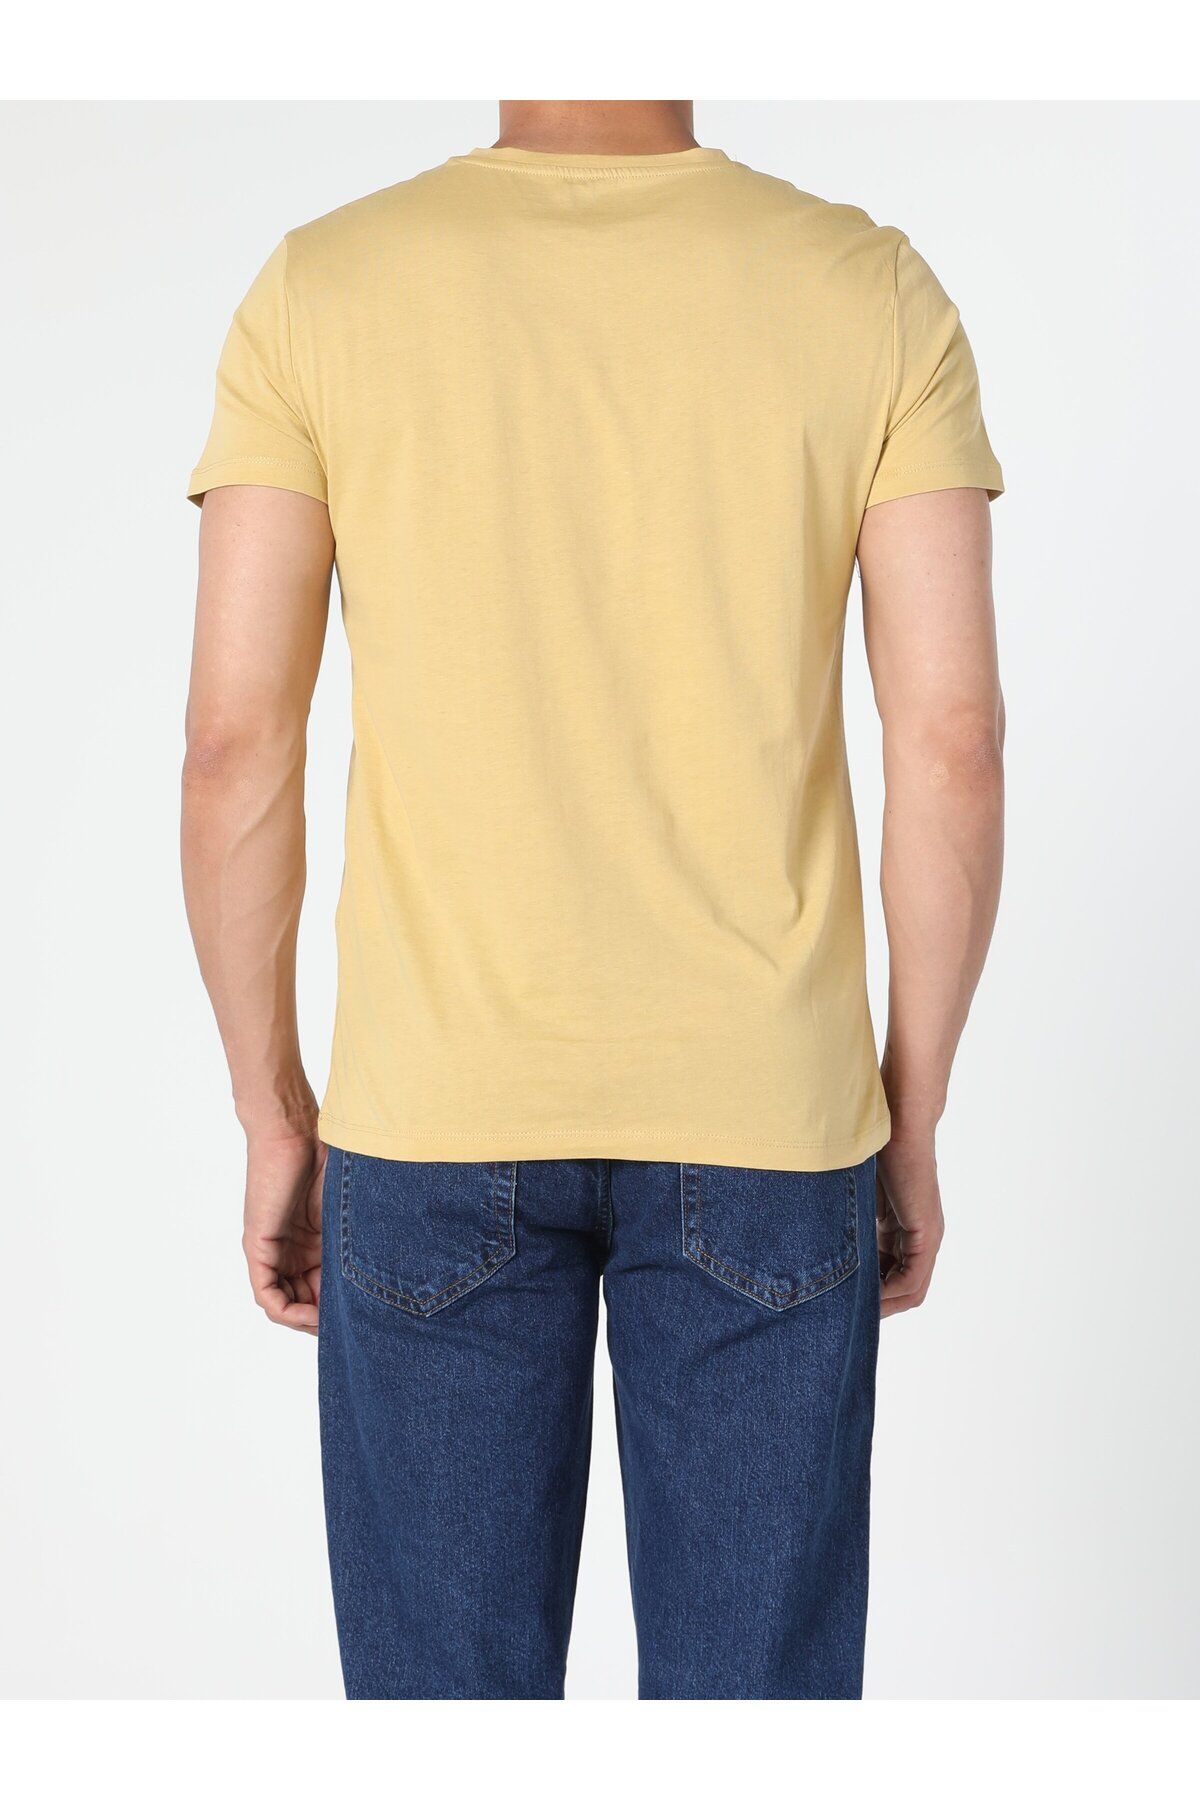 Colin’s تی شرت مردانه آستین کوتاه زعفرانی یقه بافتنی معمولی